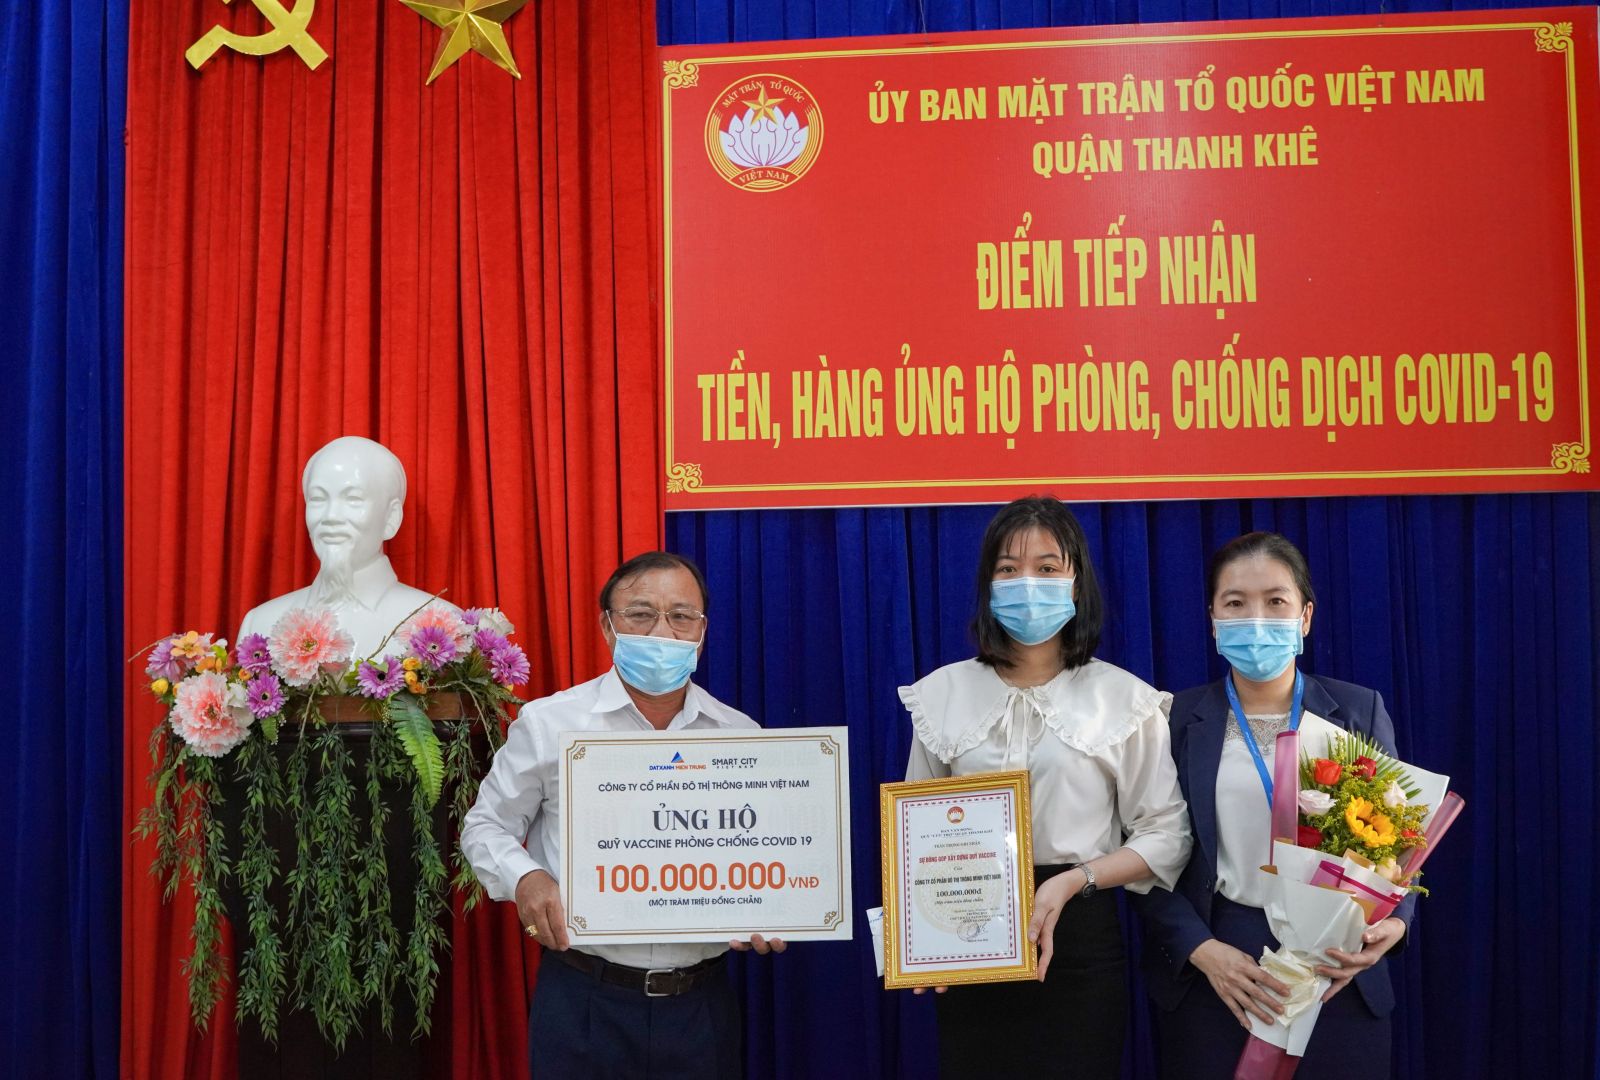 VNSC TRAO TẶNG 100 TRIỆU ĐỒNG CHO QŨY VACCINE COVID-19 QUẬN THANH KHÊ, ĐÀ NẴNG - Viet Nam Smart City